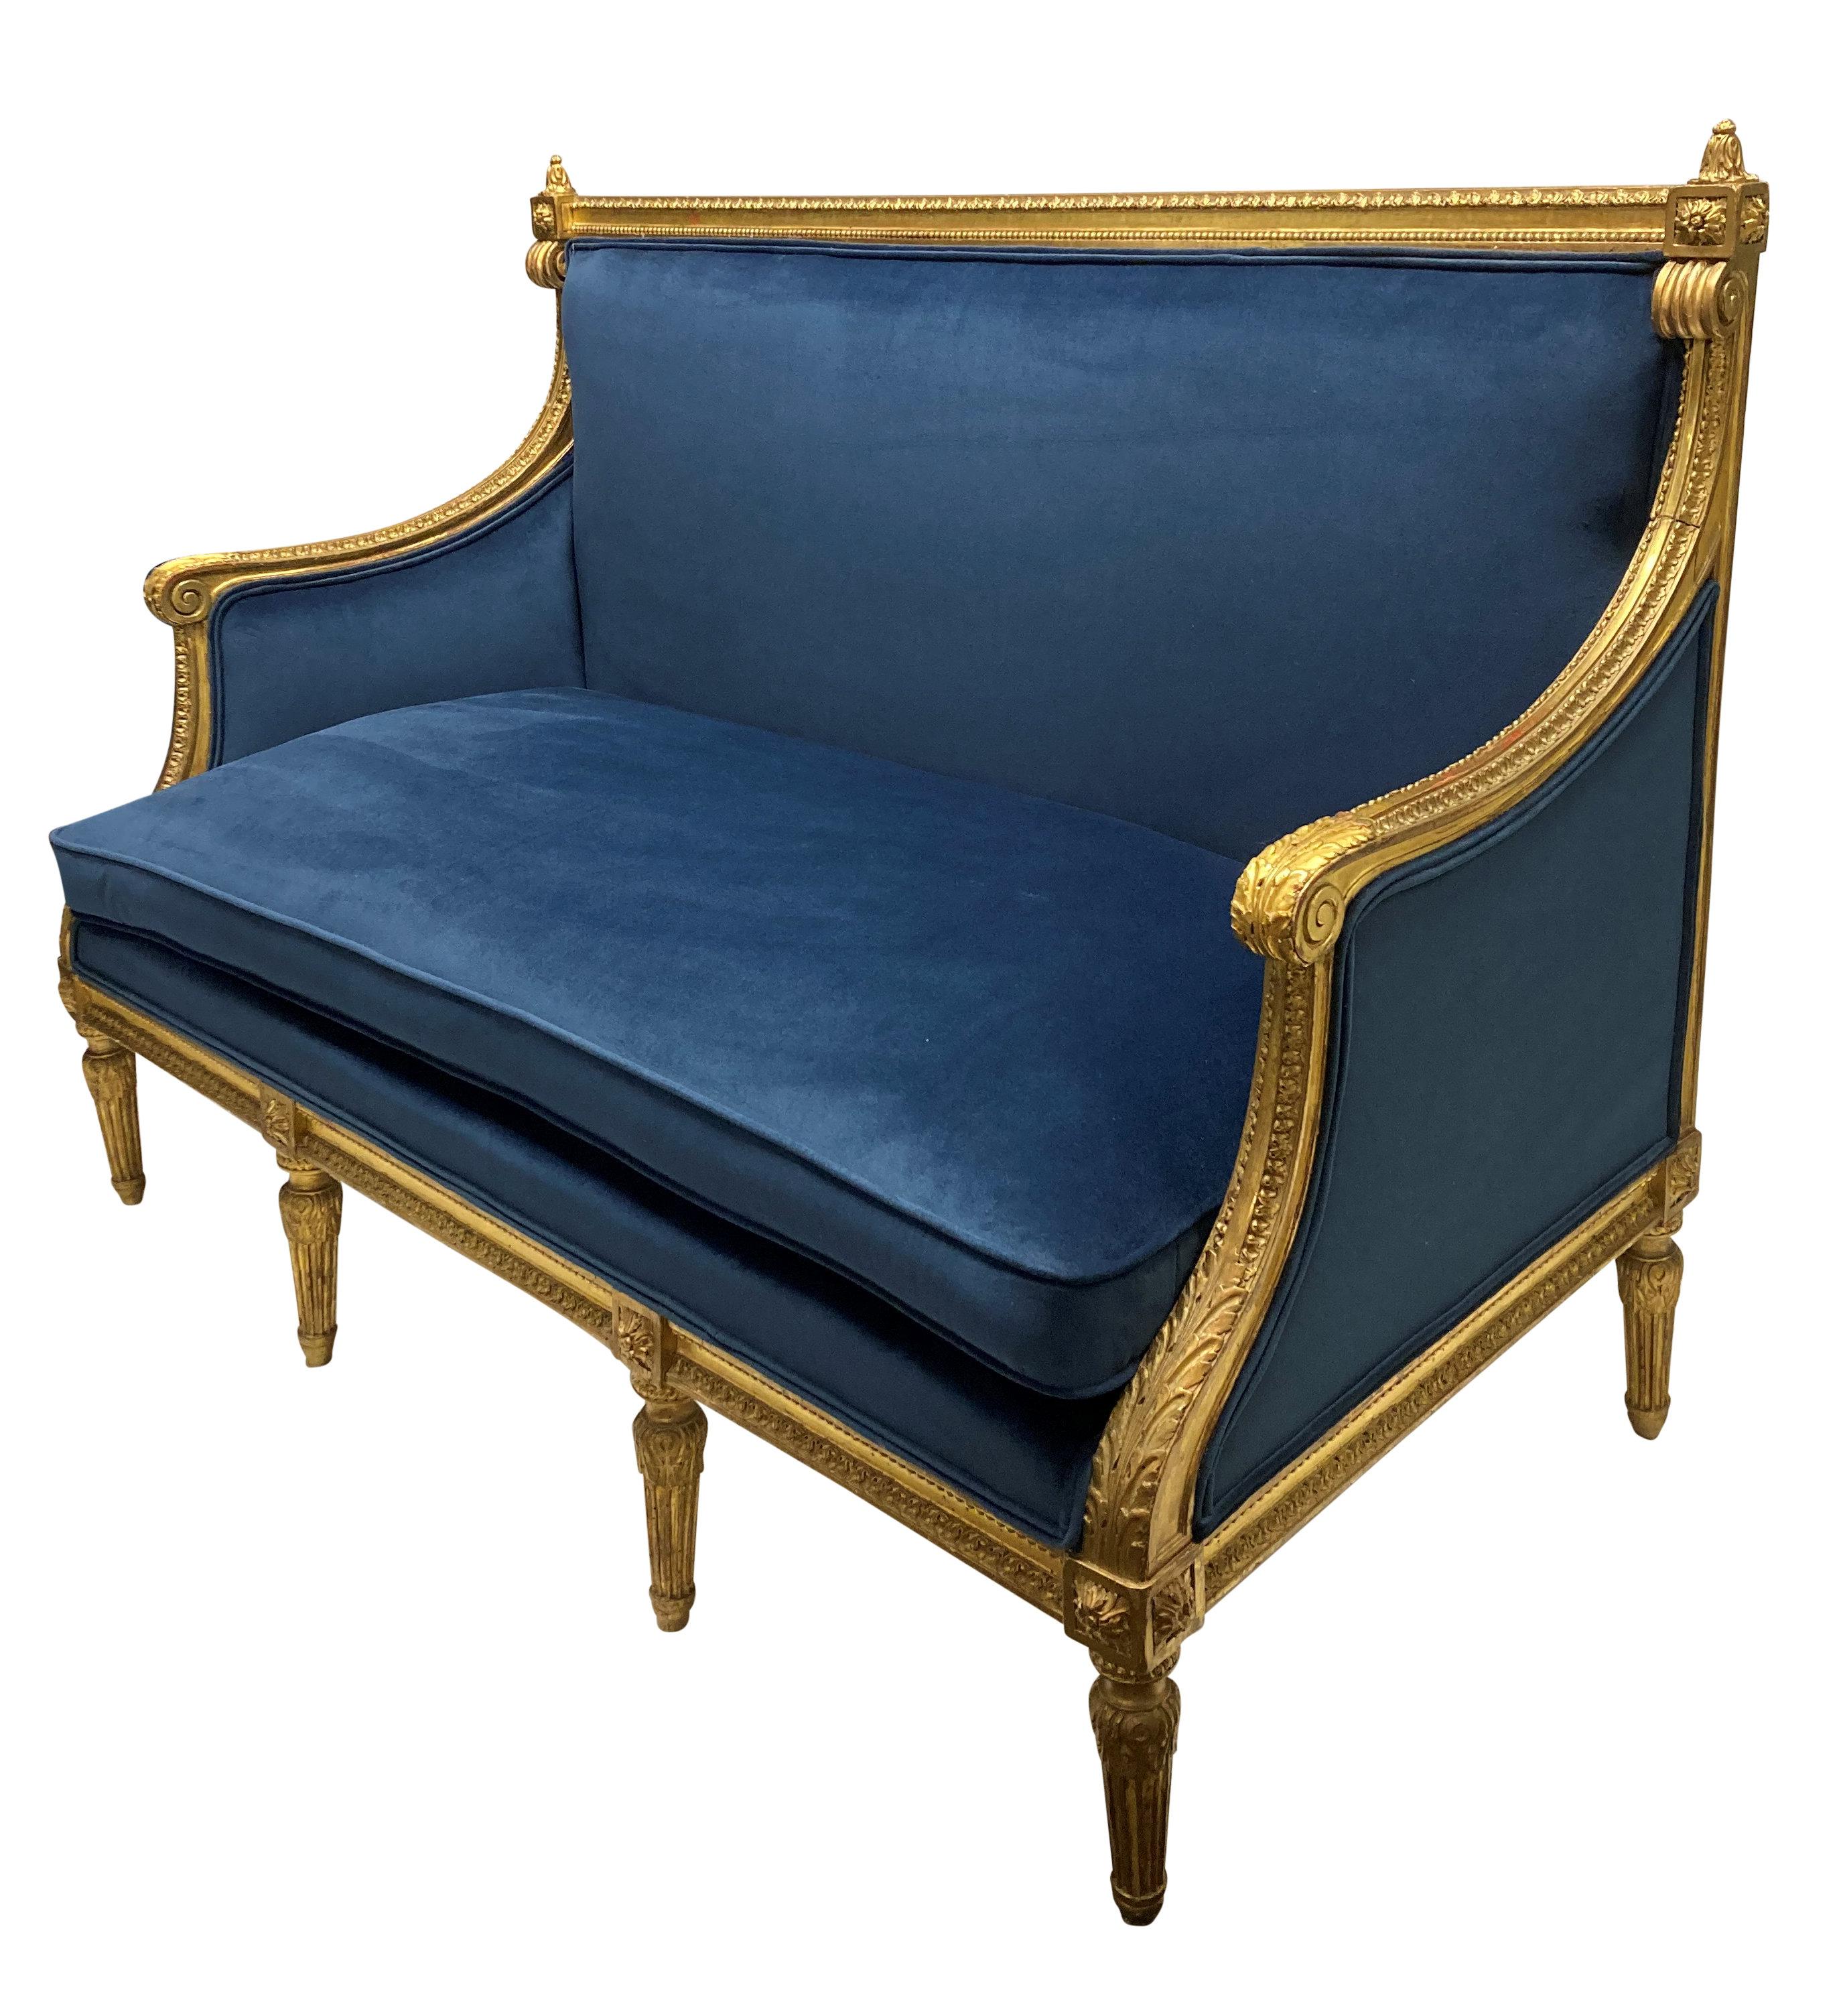 Canapé en bois sculpté de style Louis XVI, doré à l'eau et nouvellement tapissé de velours bleu.